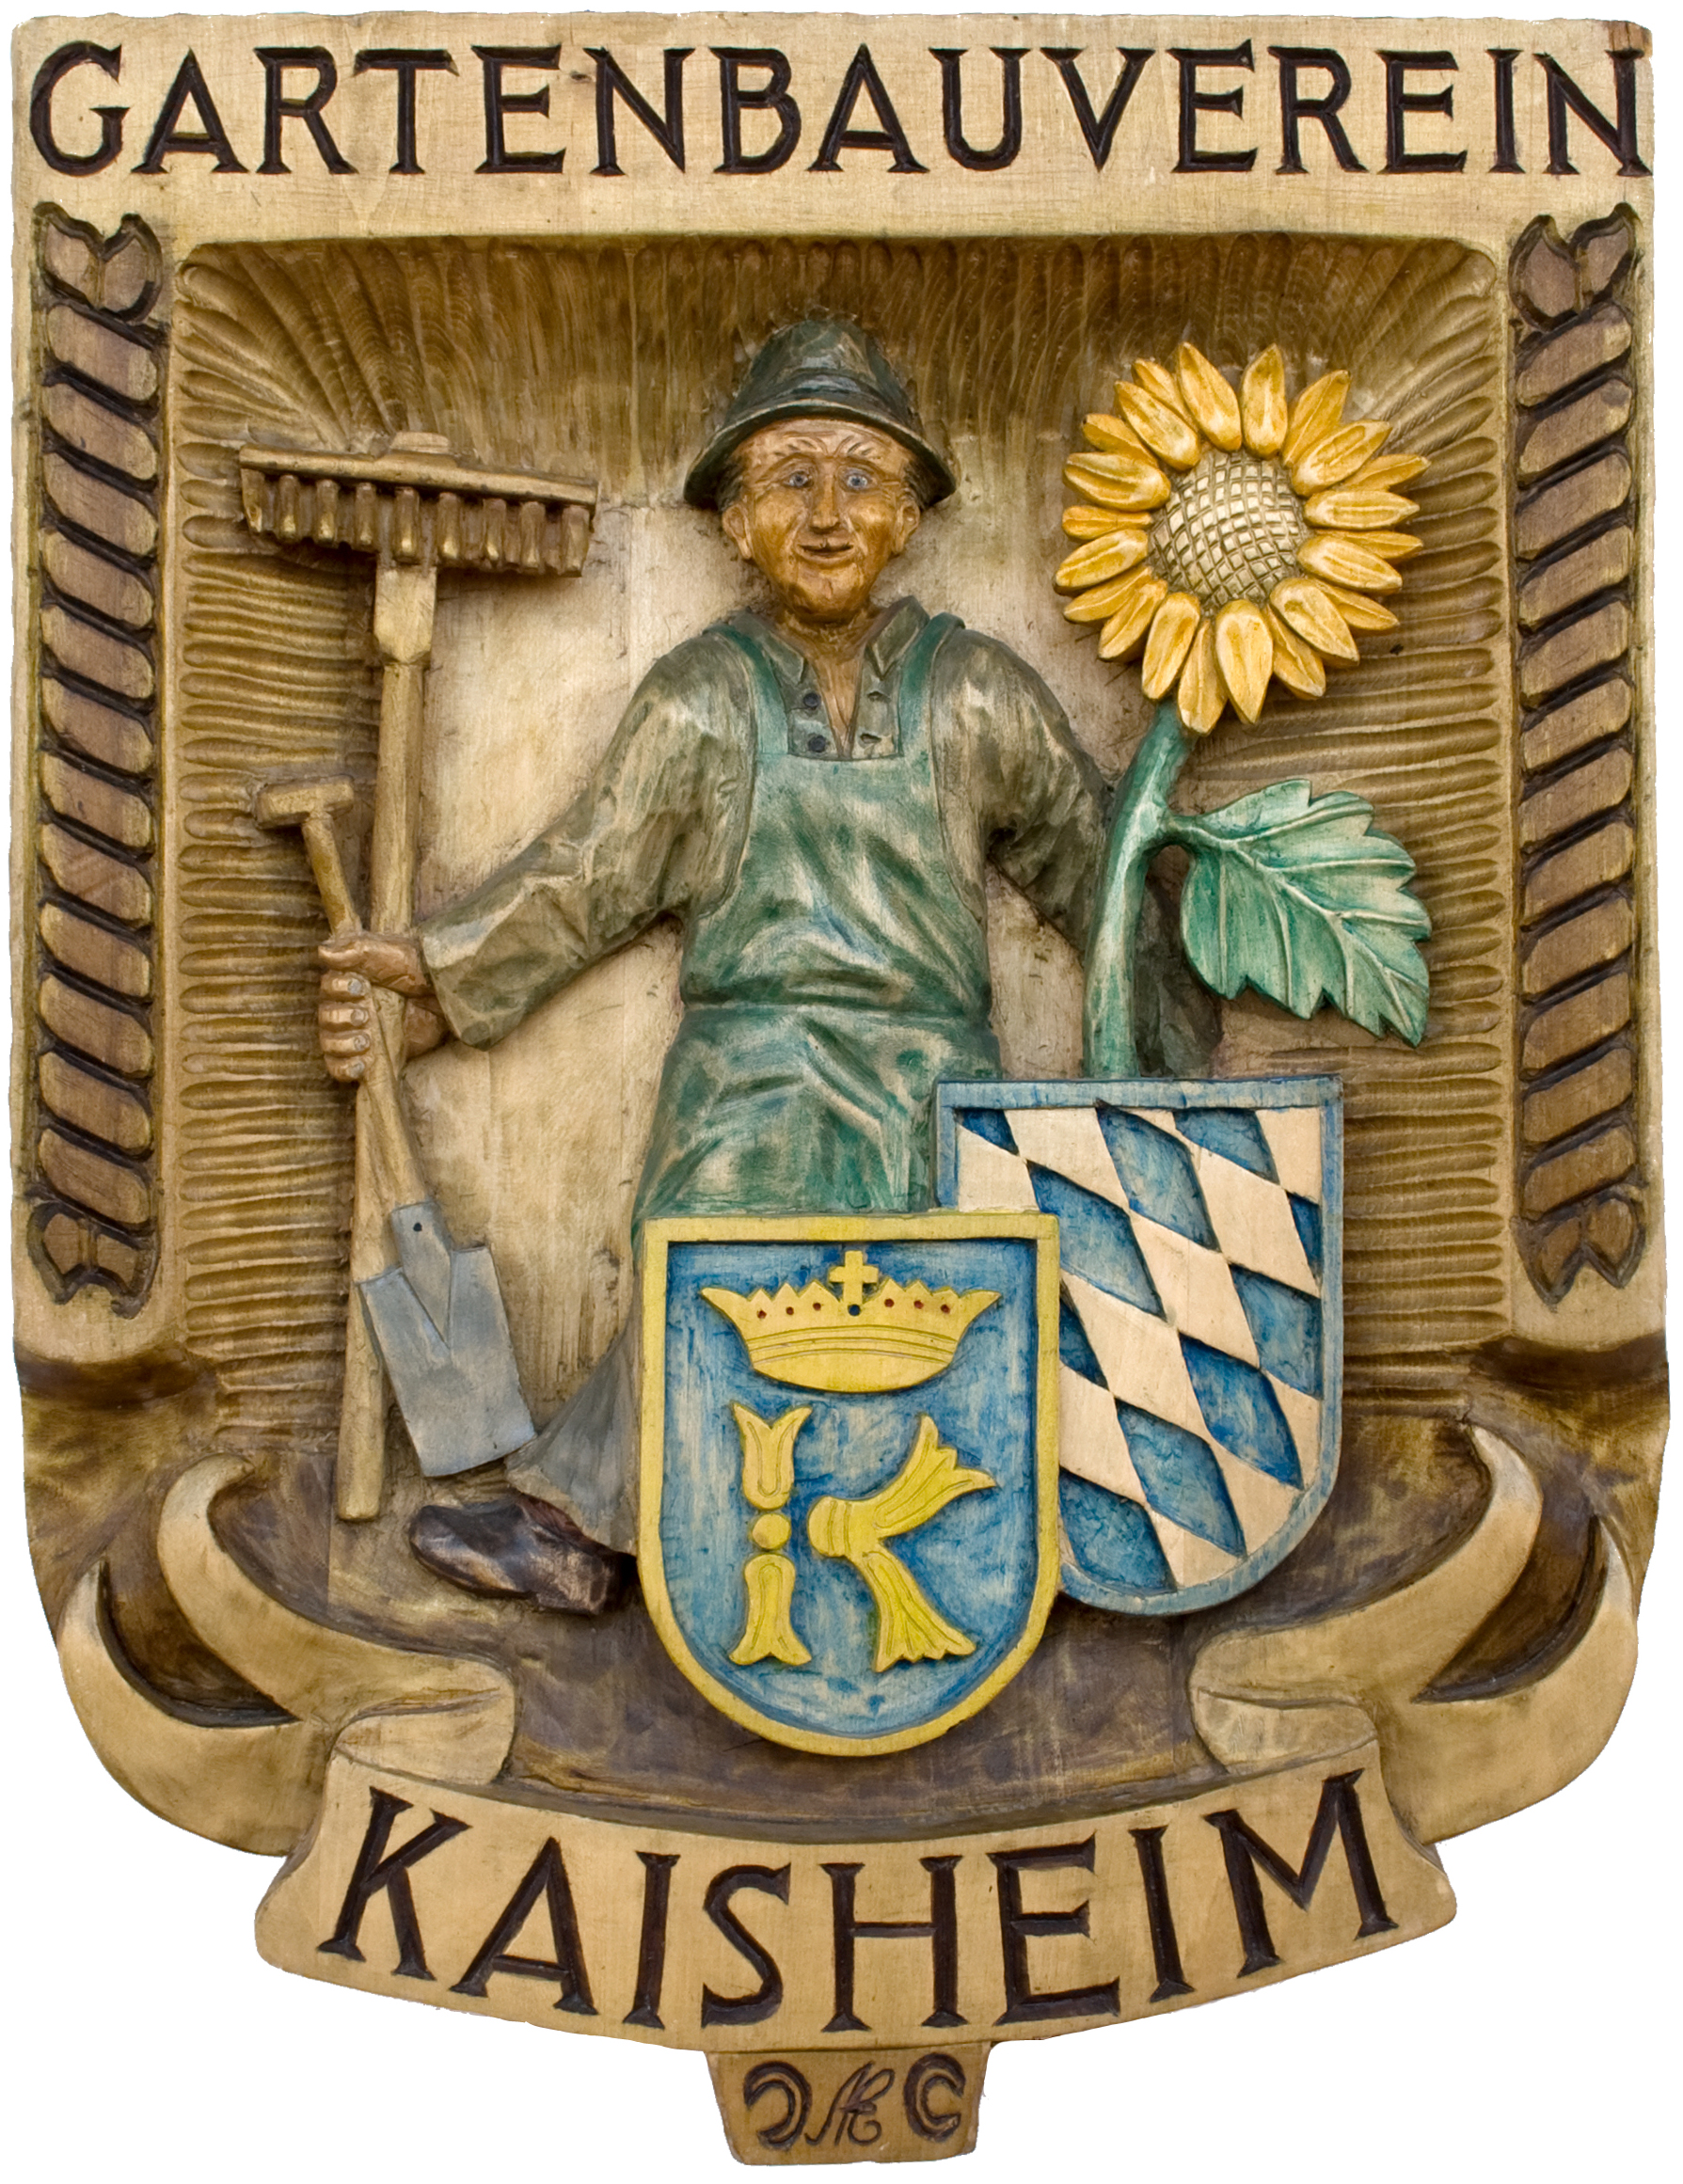 Tafel des Gartenbauverein Kaisheim